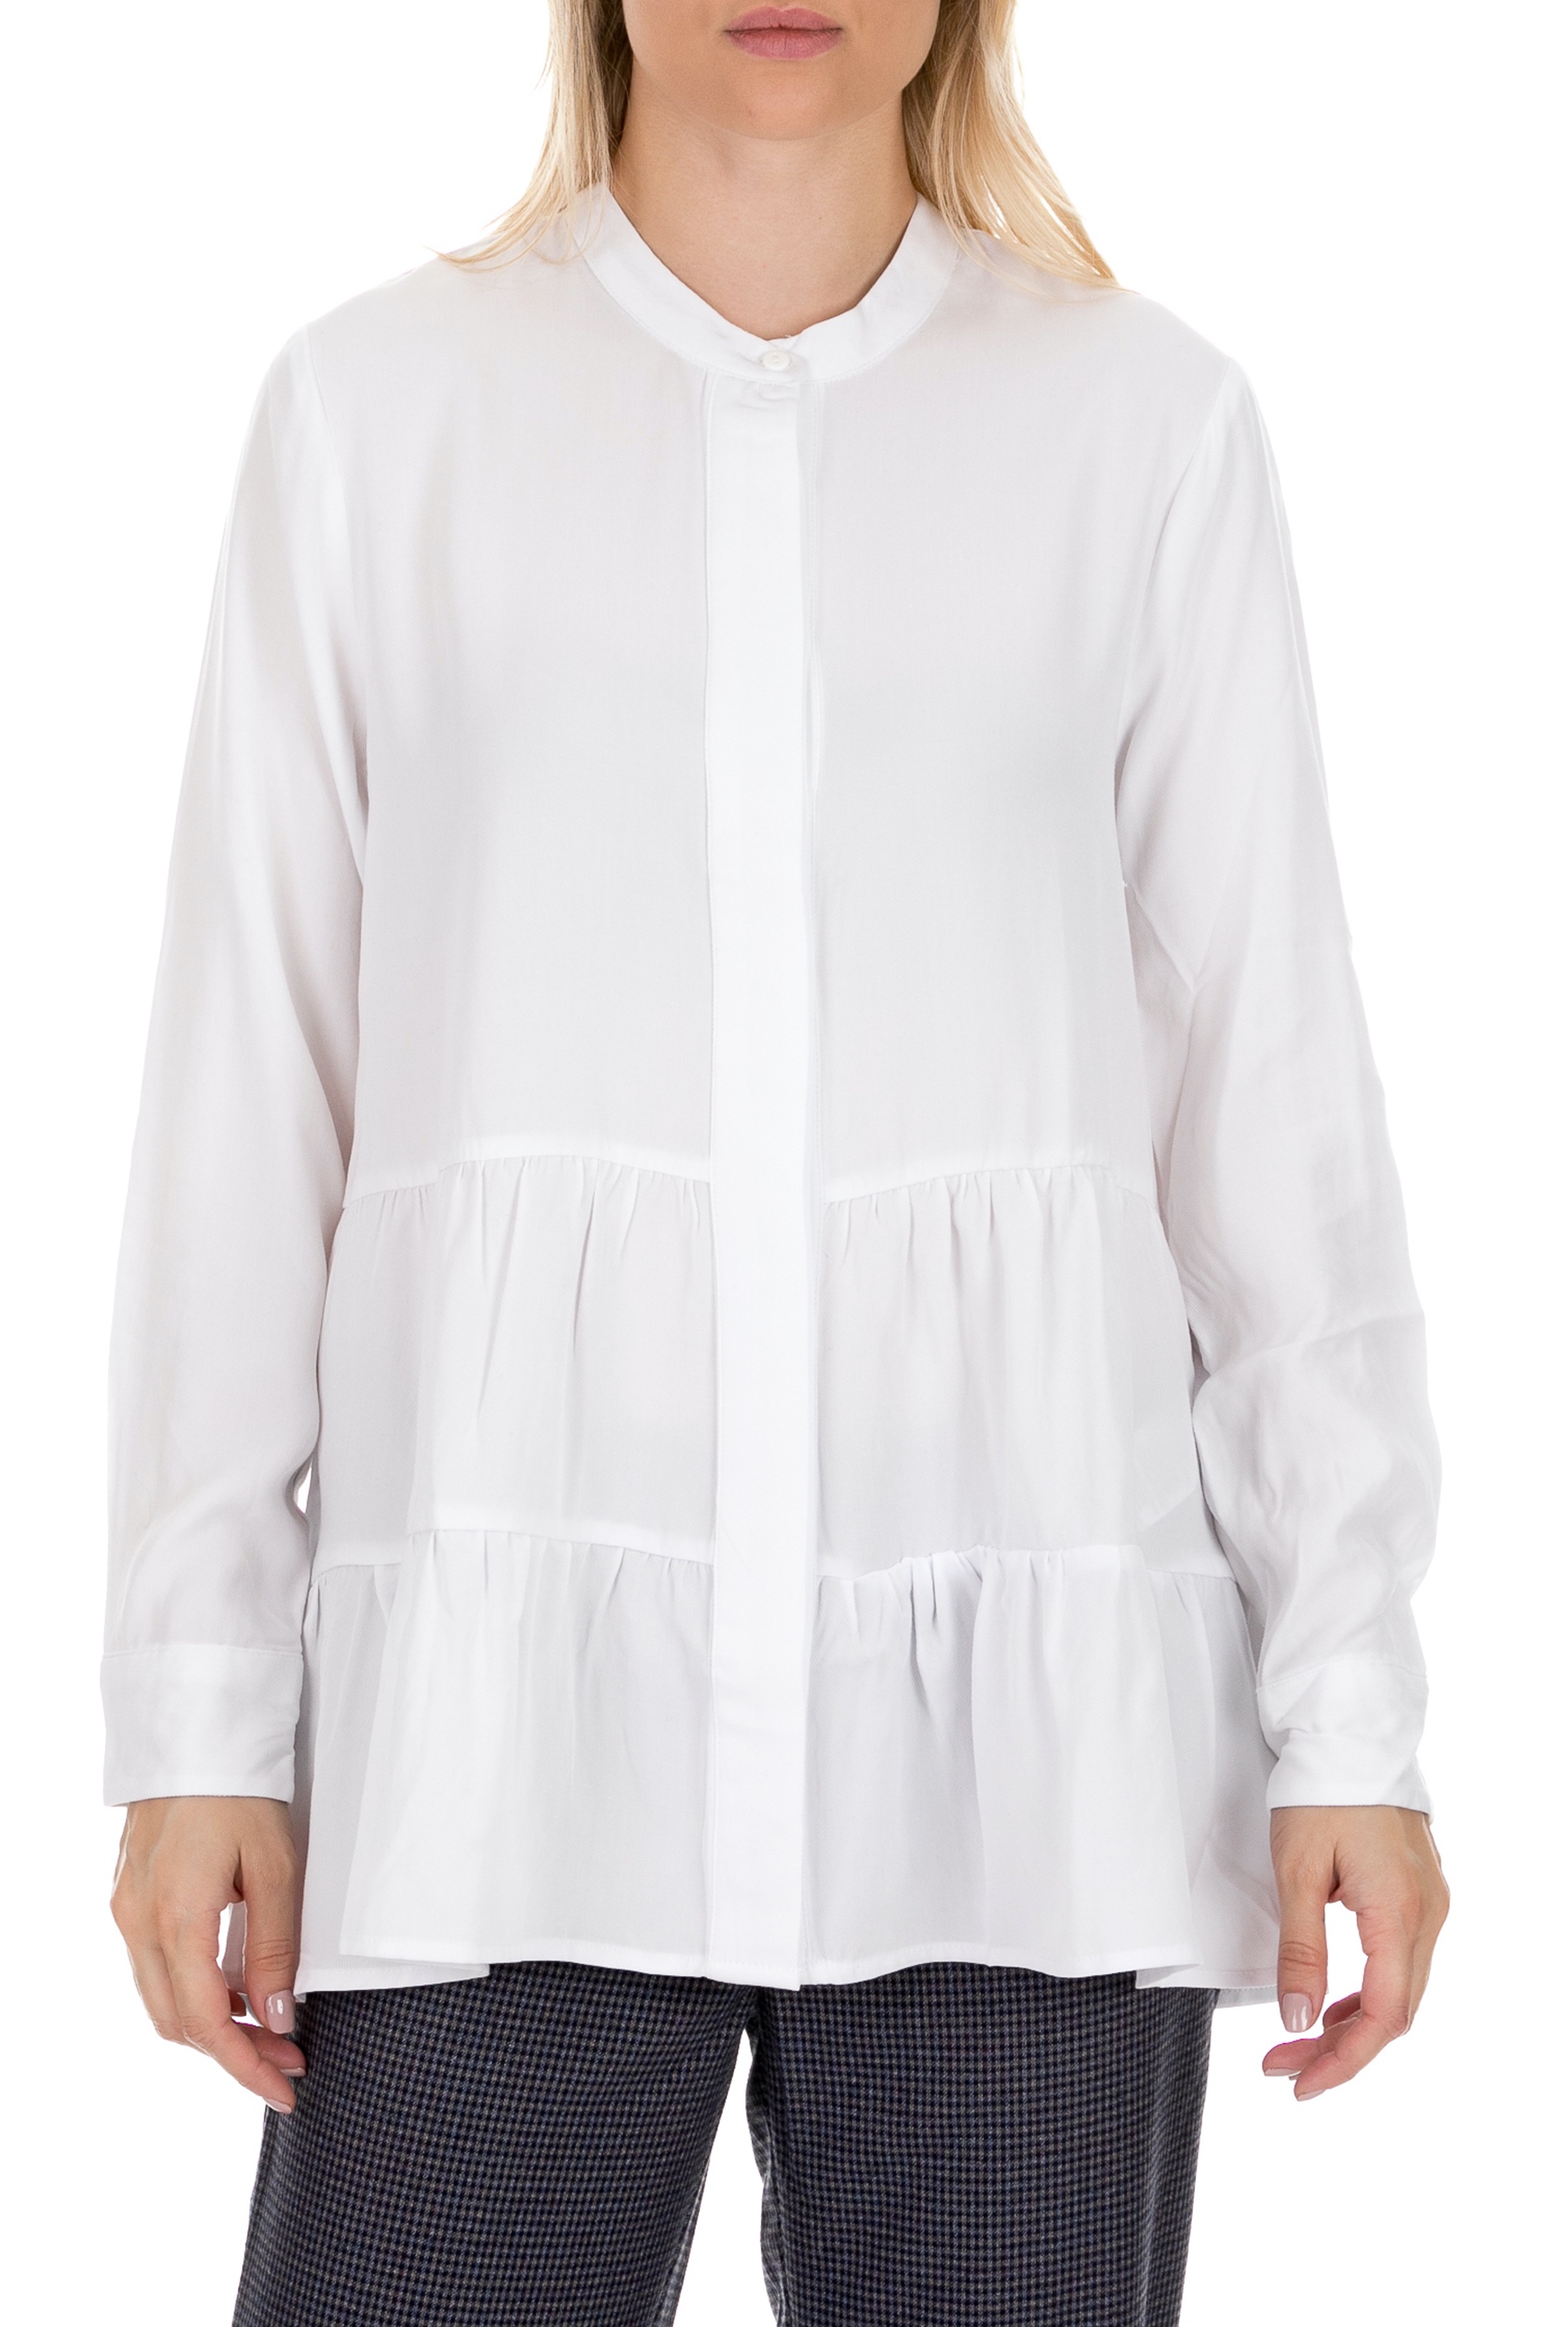 COTTON CANDY – Γυναικεία πουκαμίσα COTTON CANDY PREMIUM SELECTION λευκή